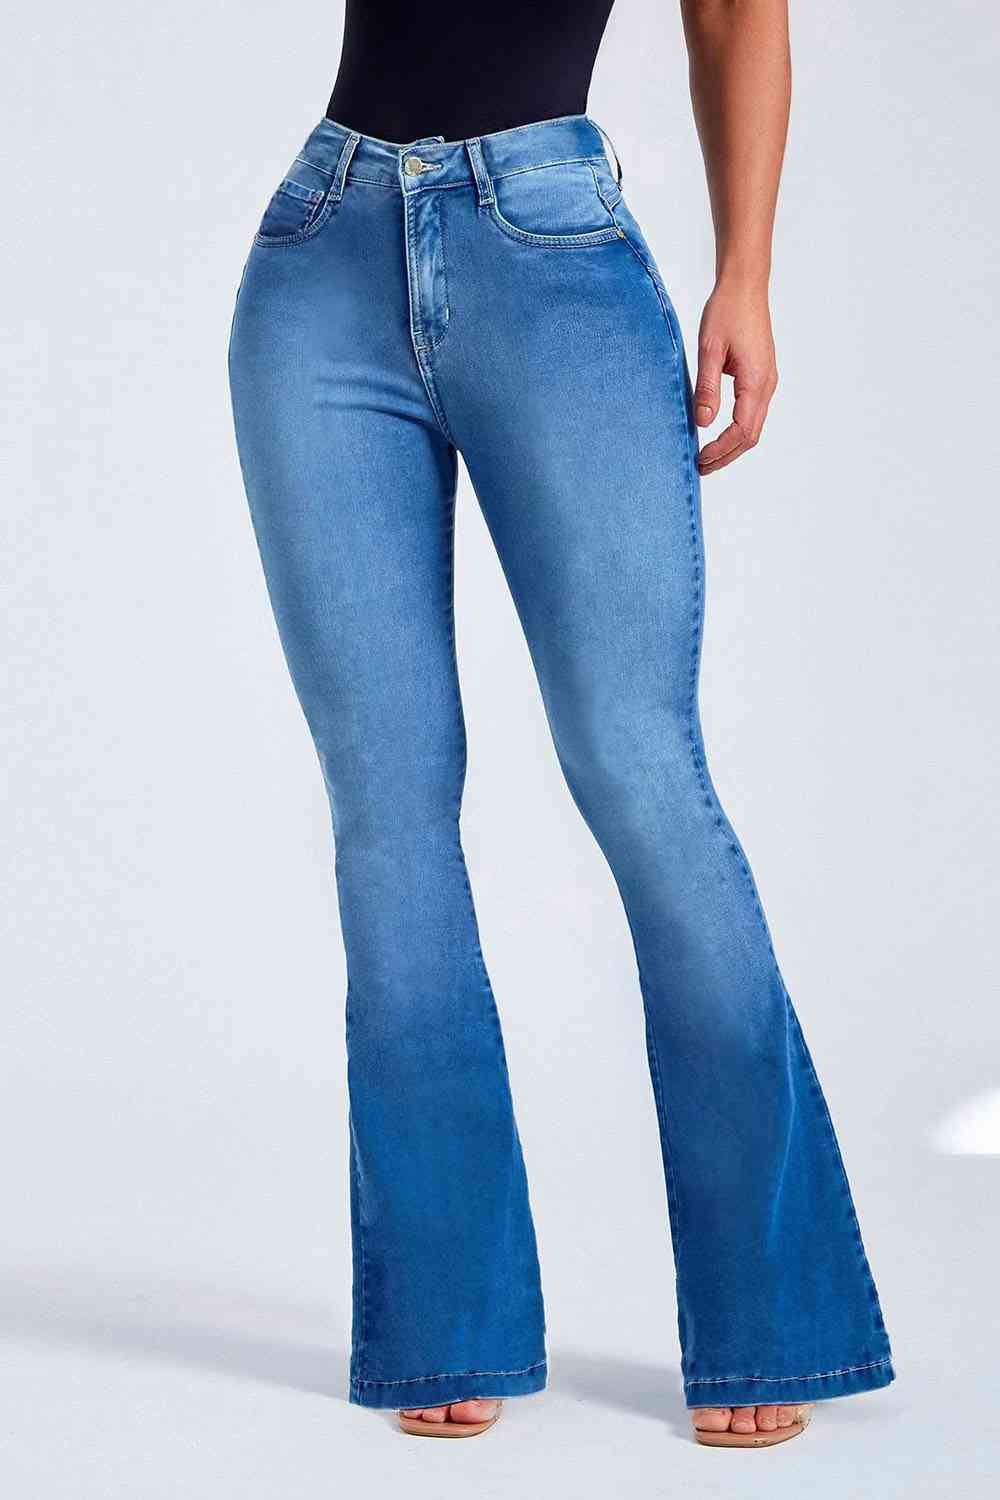 KHD Buttoned Long Jeans  Krazy Heart Designs Boutique Light S 